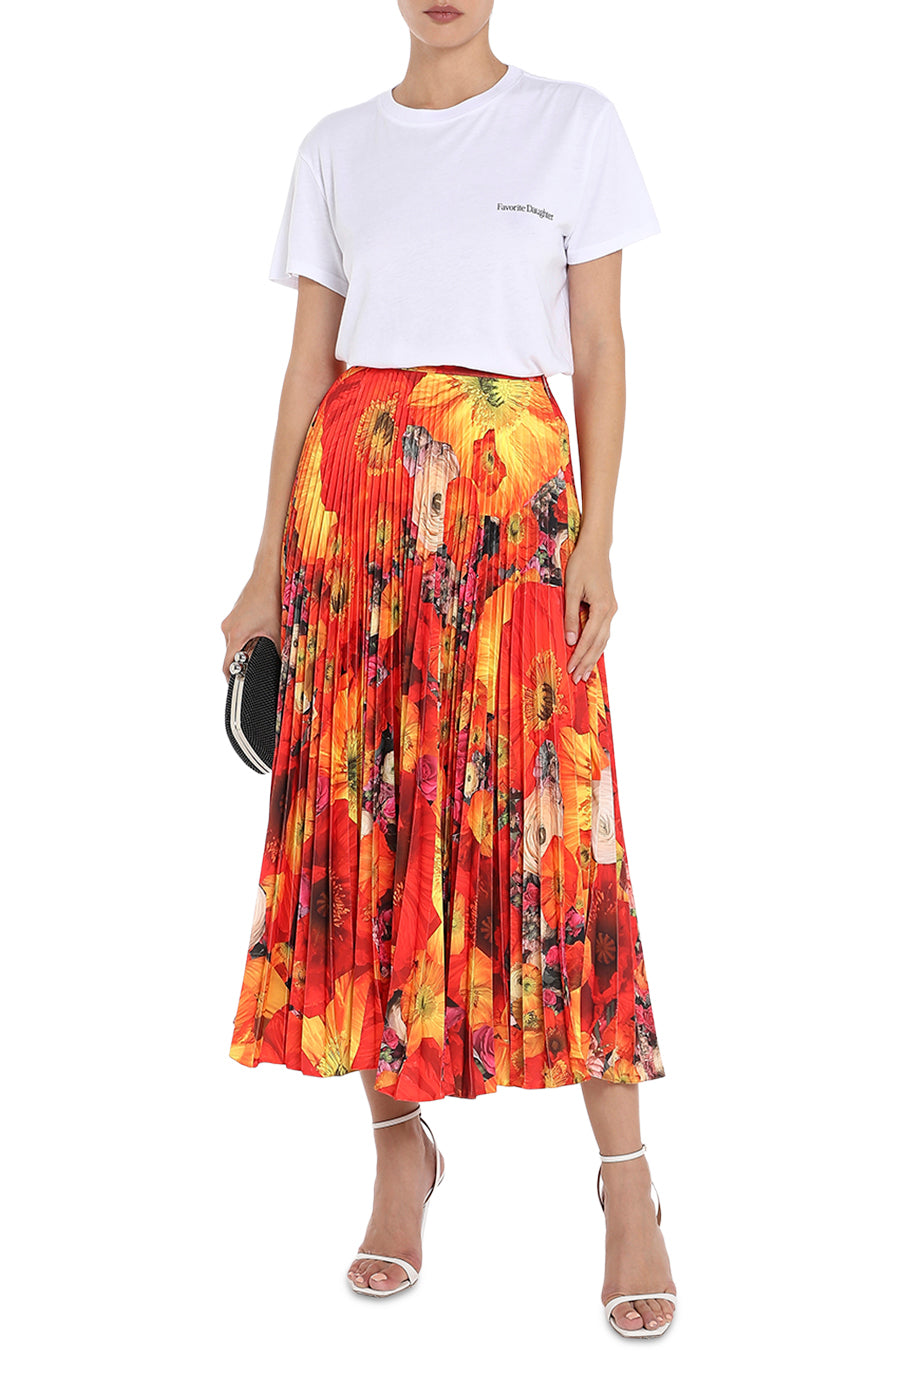 The Full Bloom Pleated Skirt